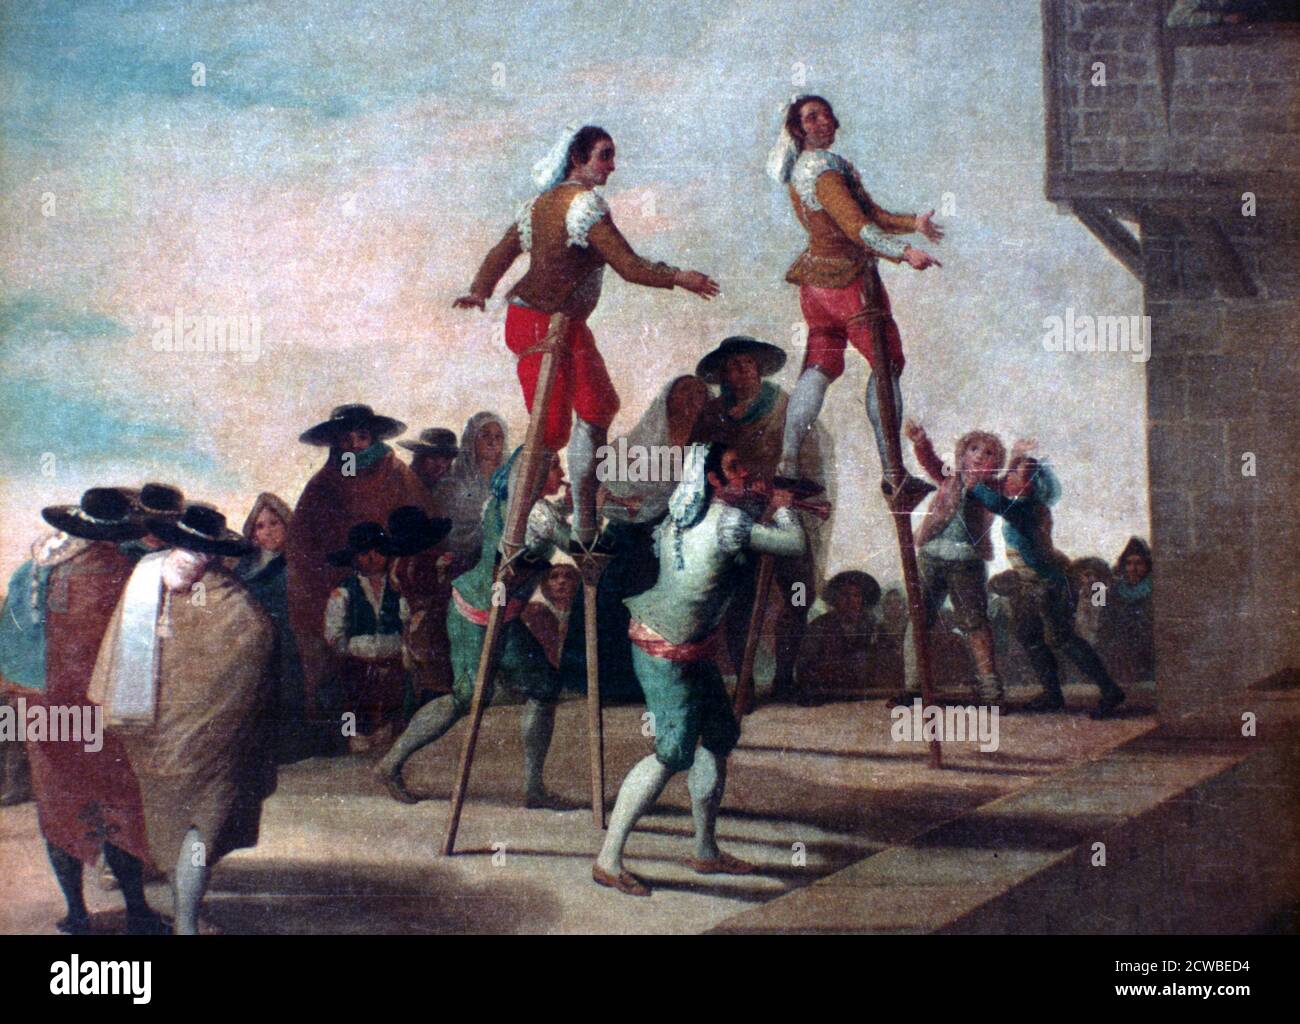 Les stilts, c1785. Artiste: Francisco Goya. Francisco Goya(1746-1828) était un artiste espagnol dont les peintures, dessins et gravures reflétaient des bouleversements historiques contemporains et influençaient d'importants peintres des XIXe et XXe siècles. Banque D'Images